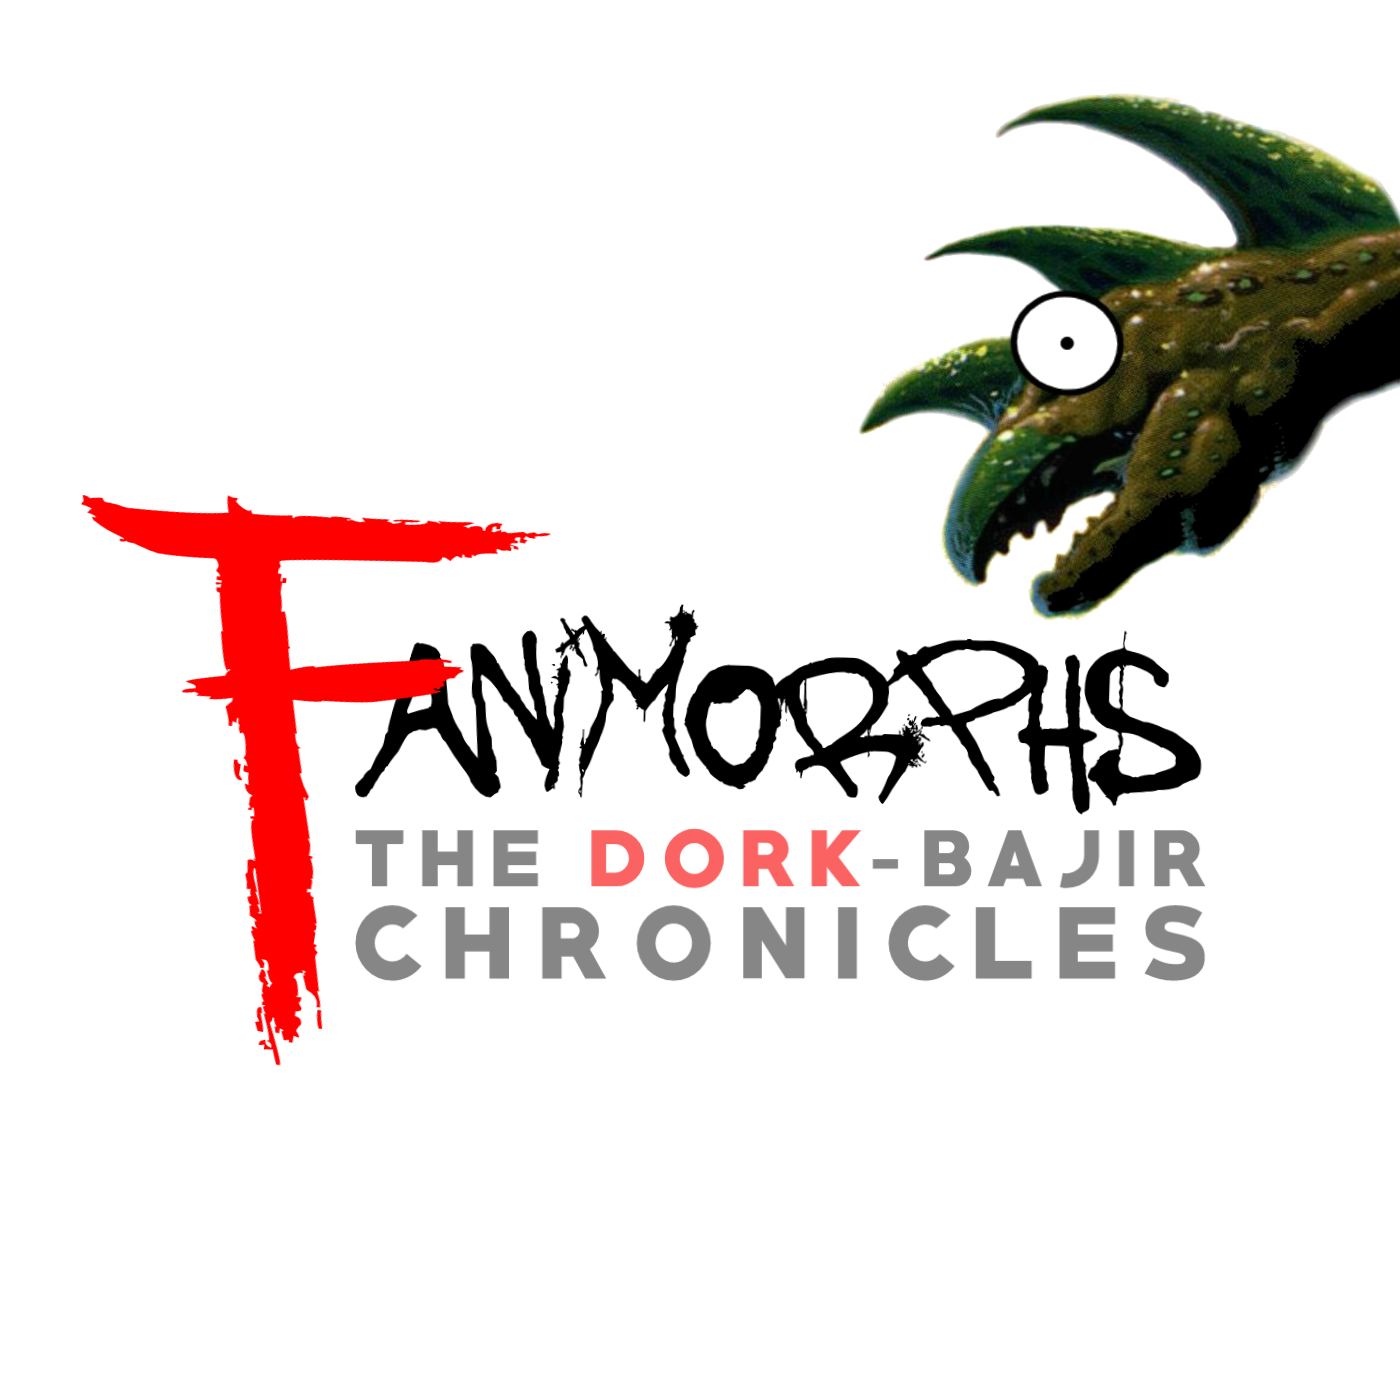 Fanimorphs The Dork-Bajir Chronicles